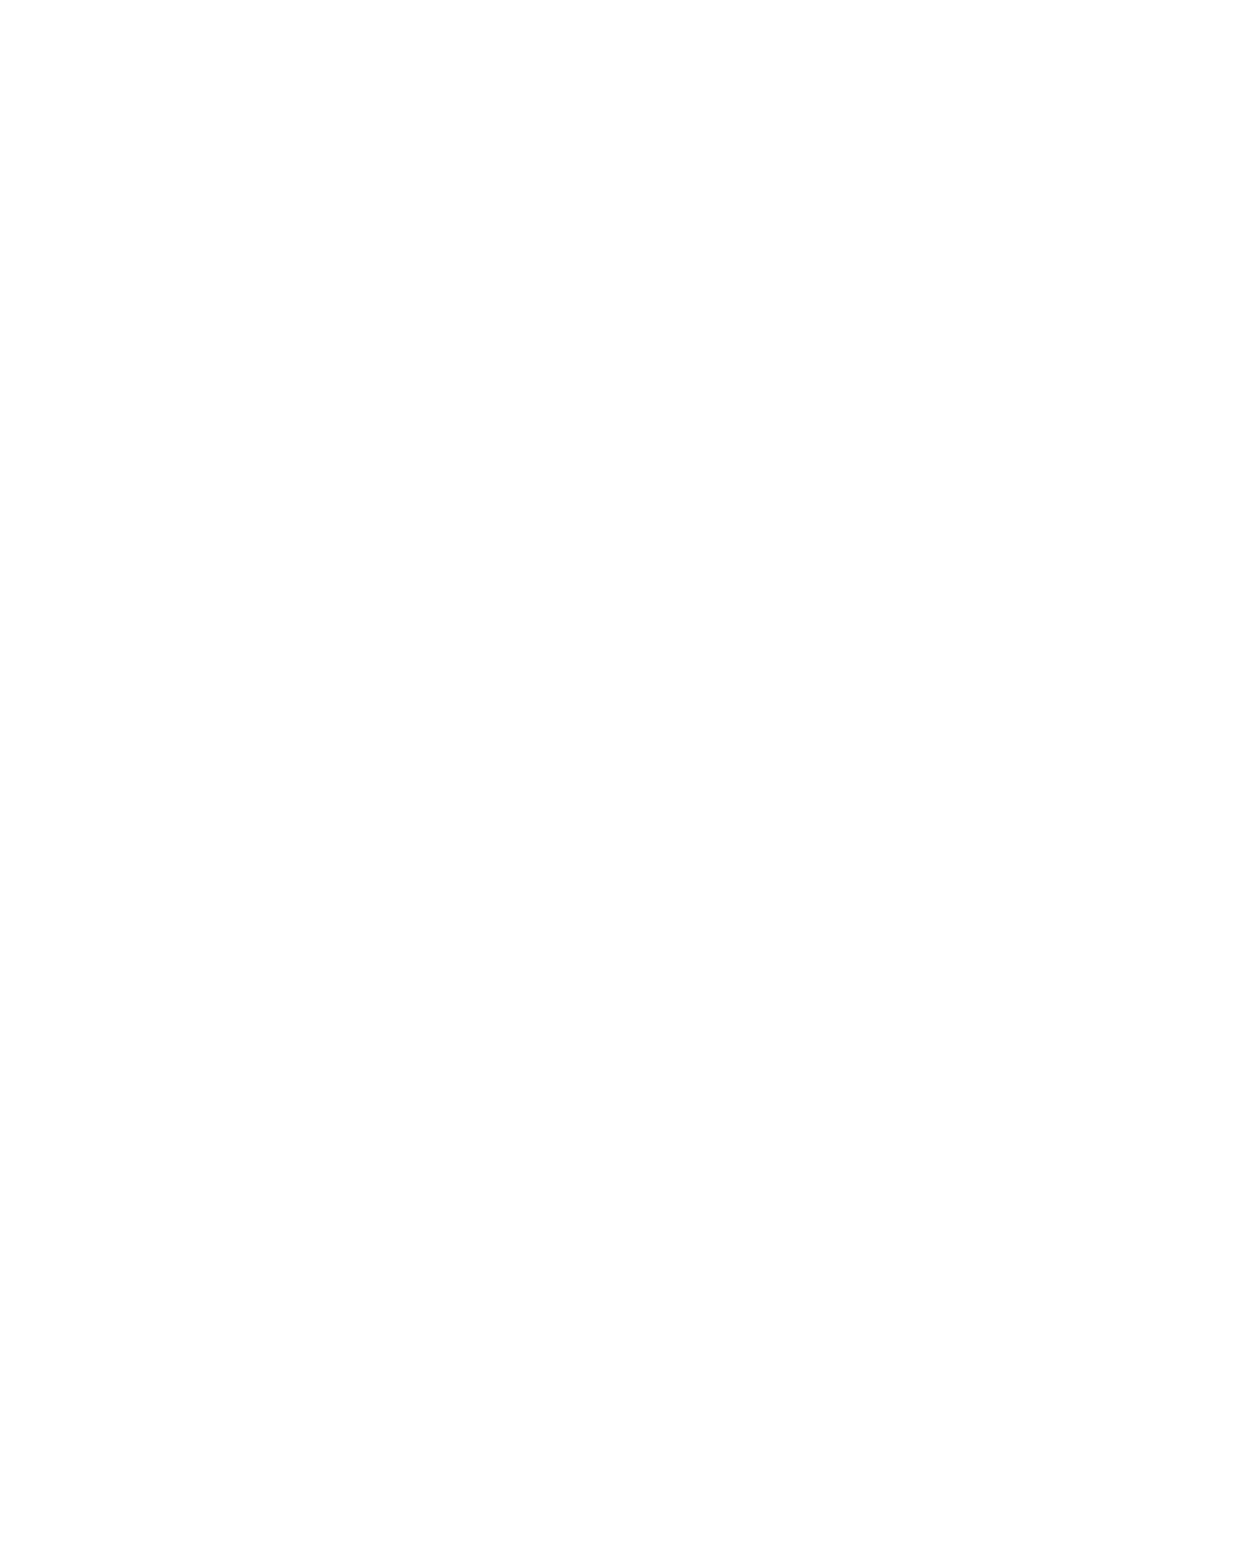 Insulet logo for dark backgrounds (transparent PNG)